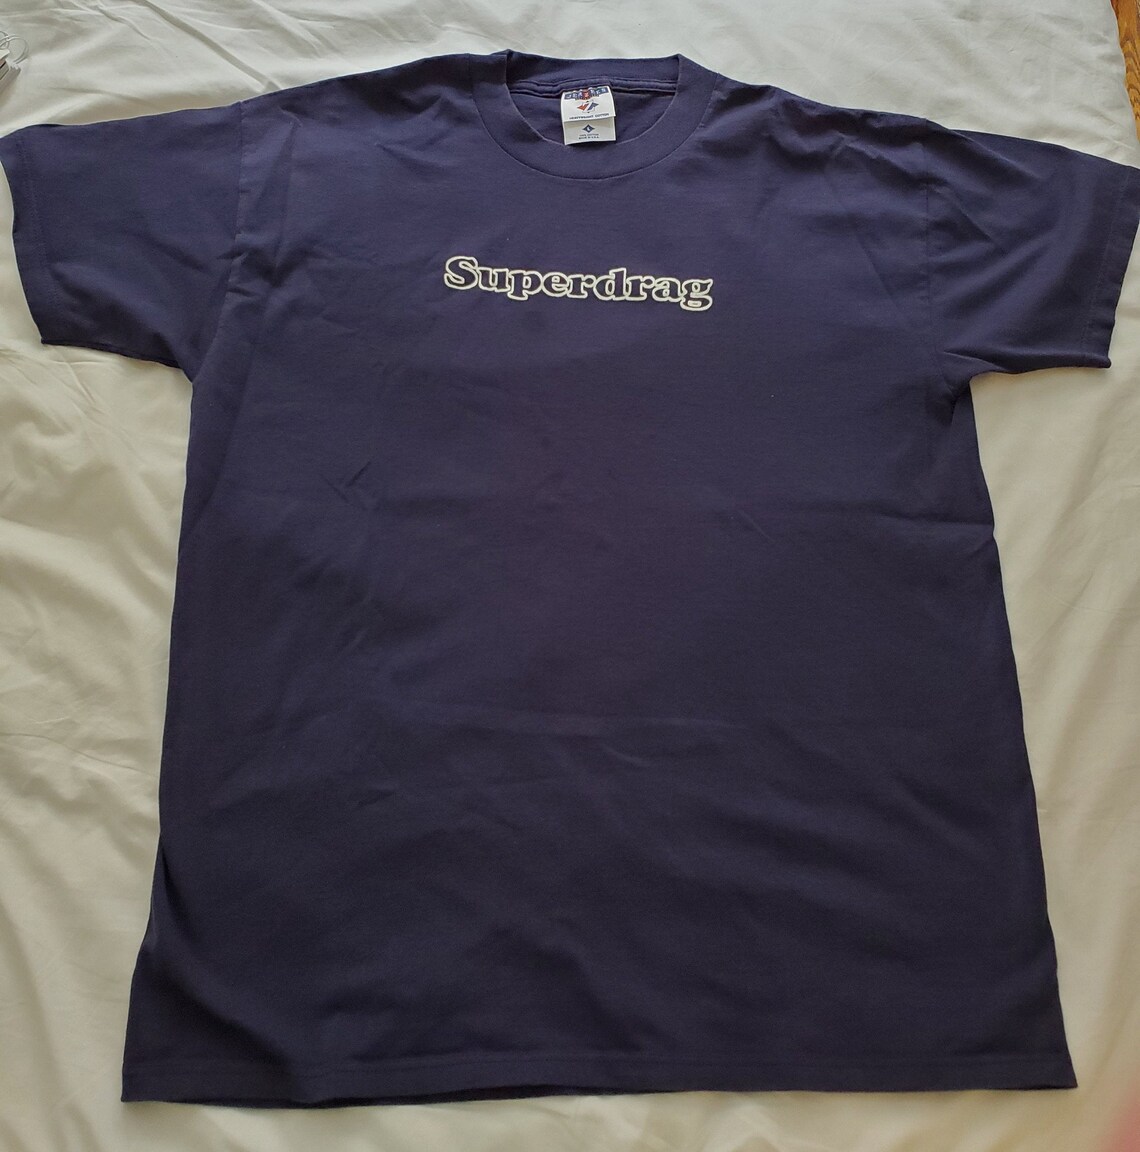 Superdrag Vintage T-Shirt Blue | Etsy